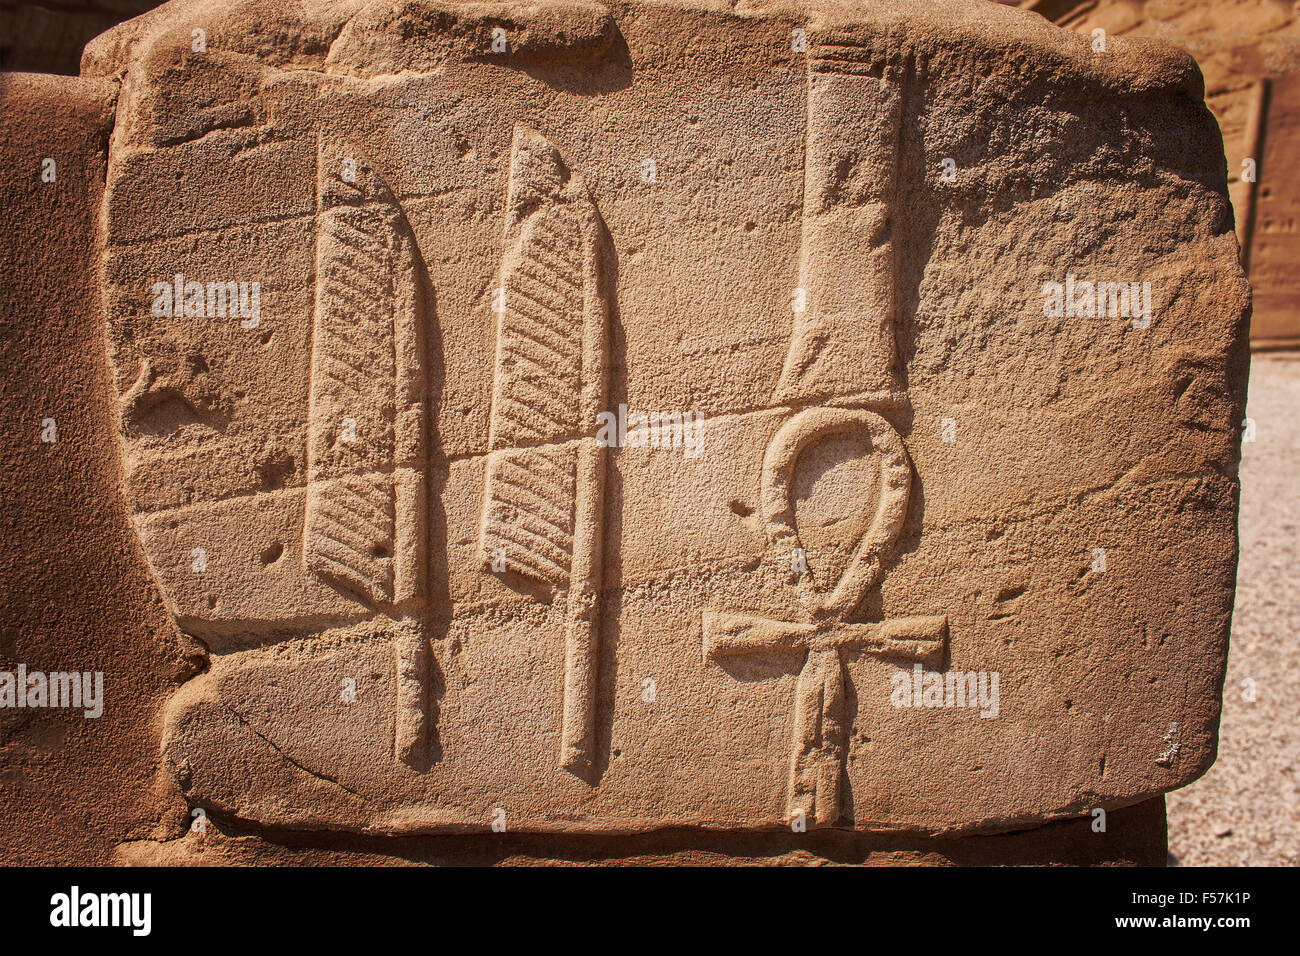 Immagine di pietra intagliata trovato presso il tempio di Karnak, Egitto. Foto Stock